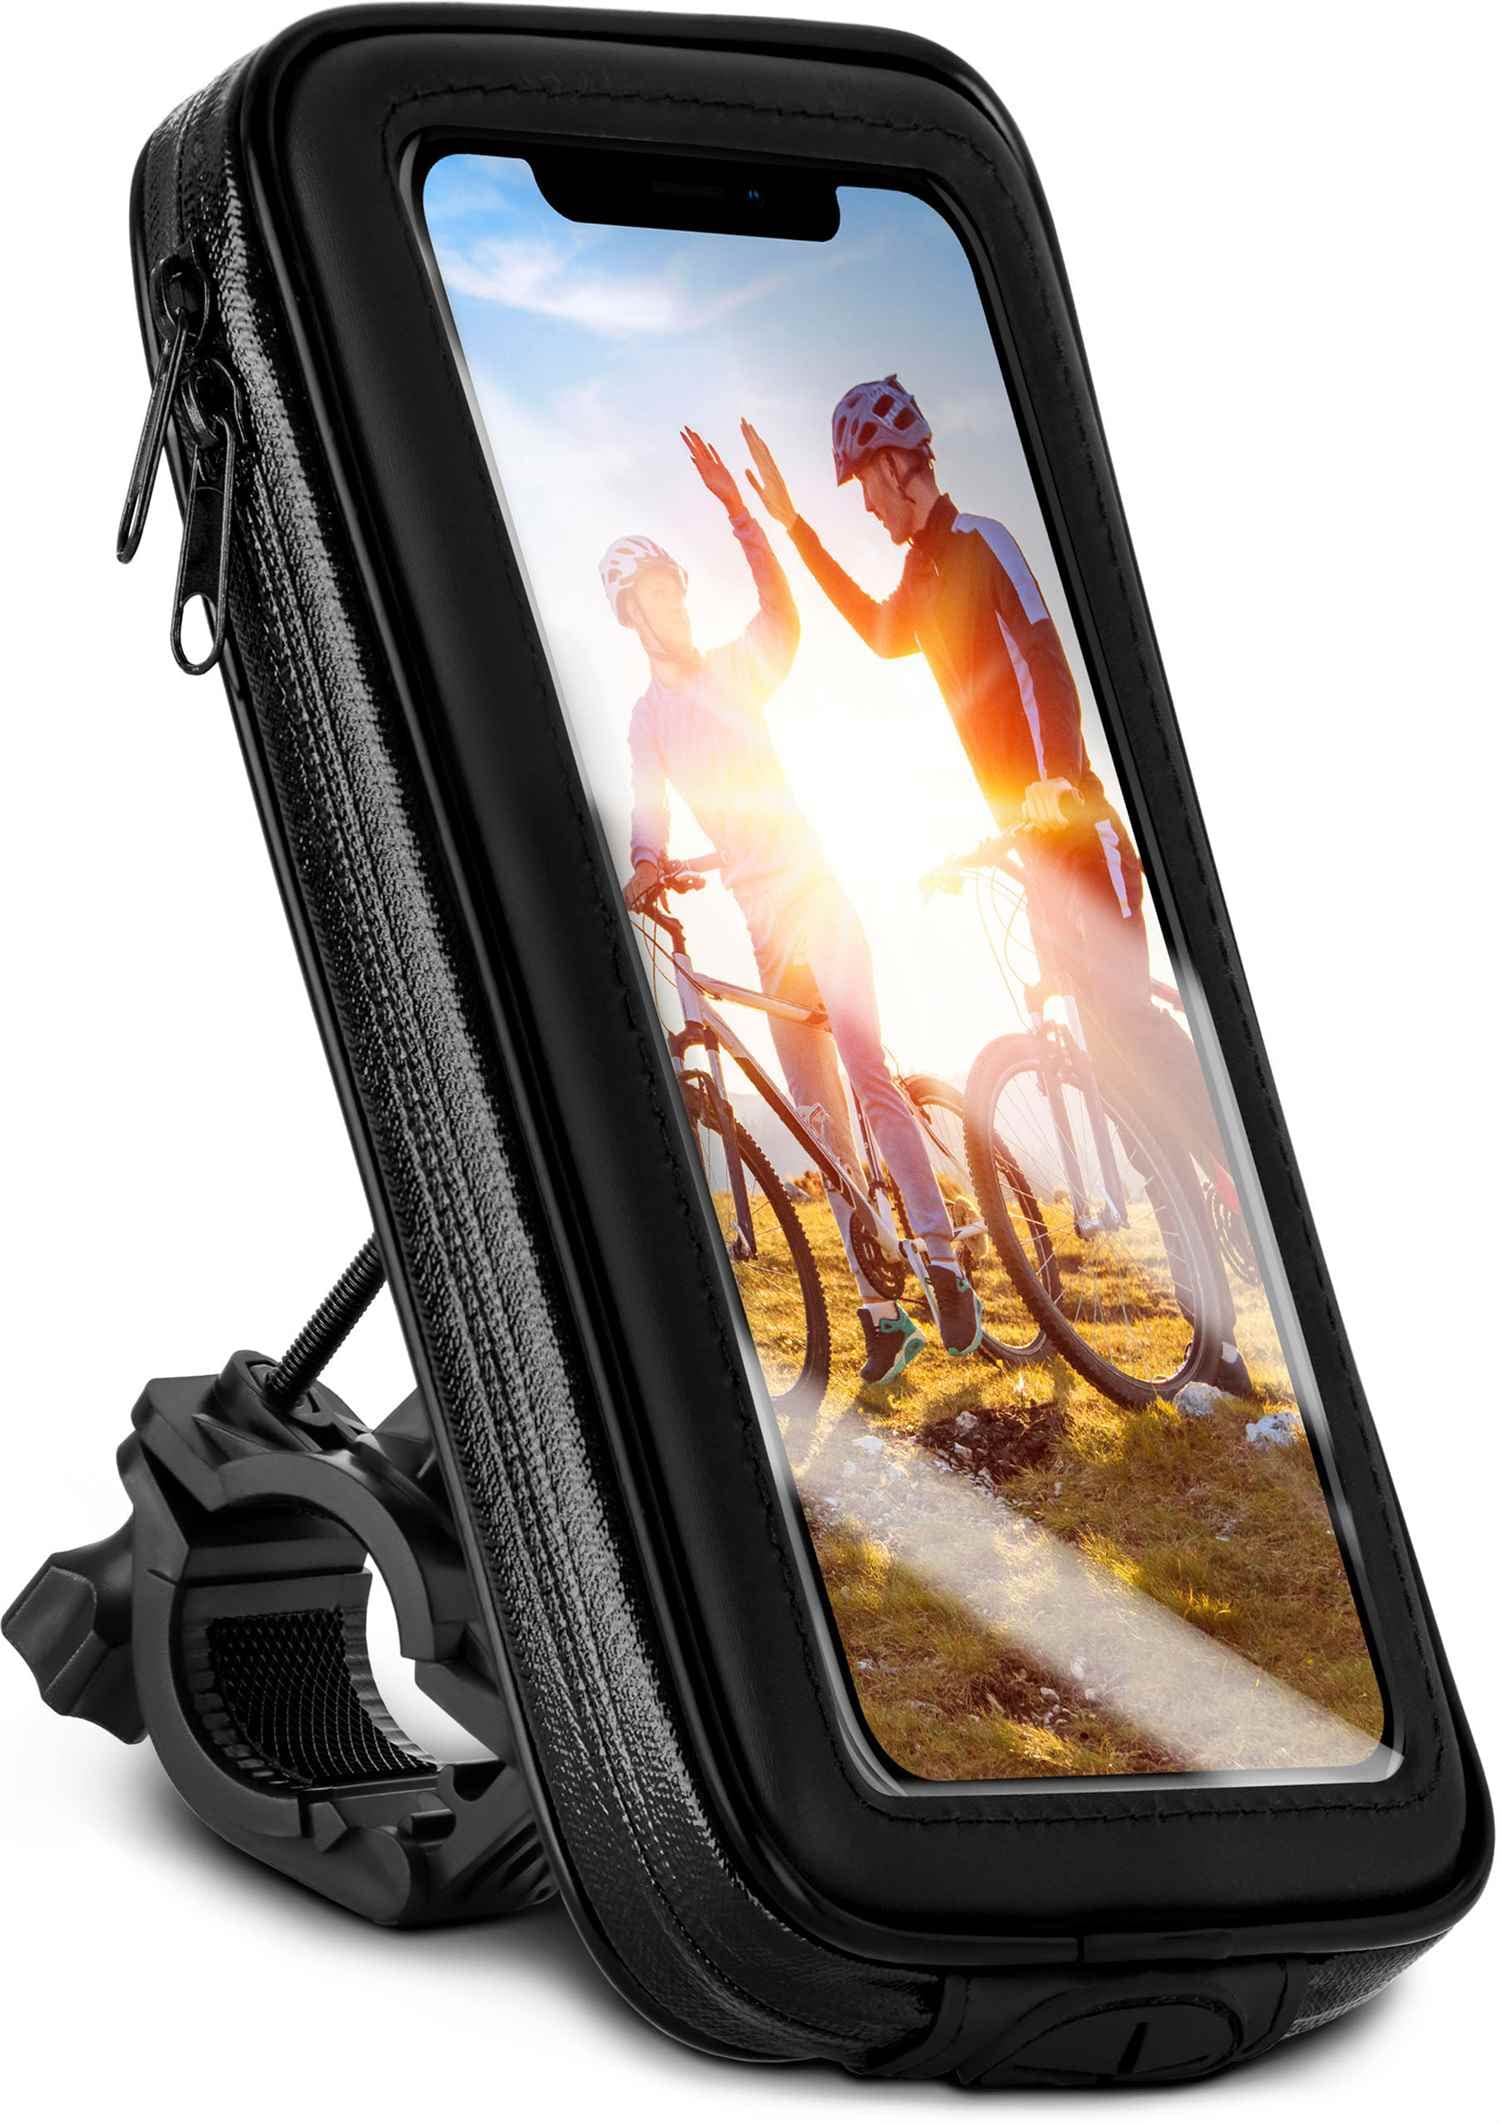 moex Fahrrad Handyhalterung kompatibel mit iPhone 5s / 5 / SE (2016) - Lenkertasche mit Sichtfenster, neig- und drehbar, Lenker Halterung wasserdicht, Schwarz von moex